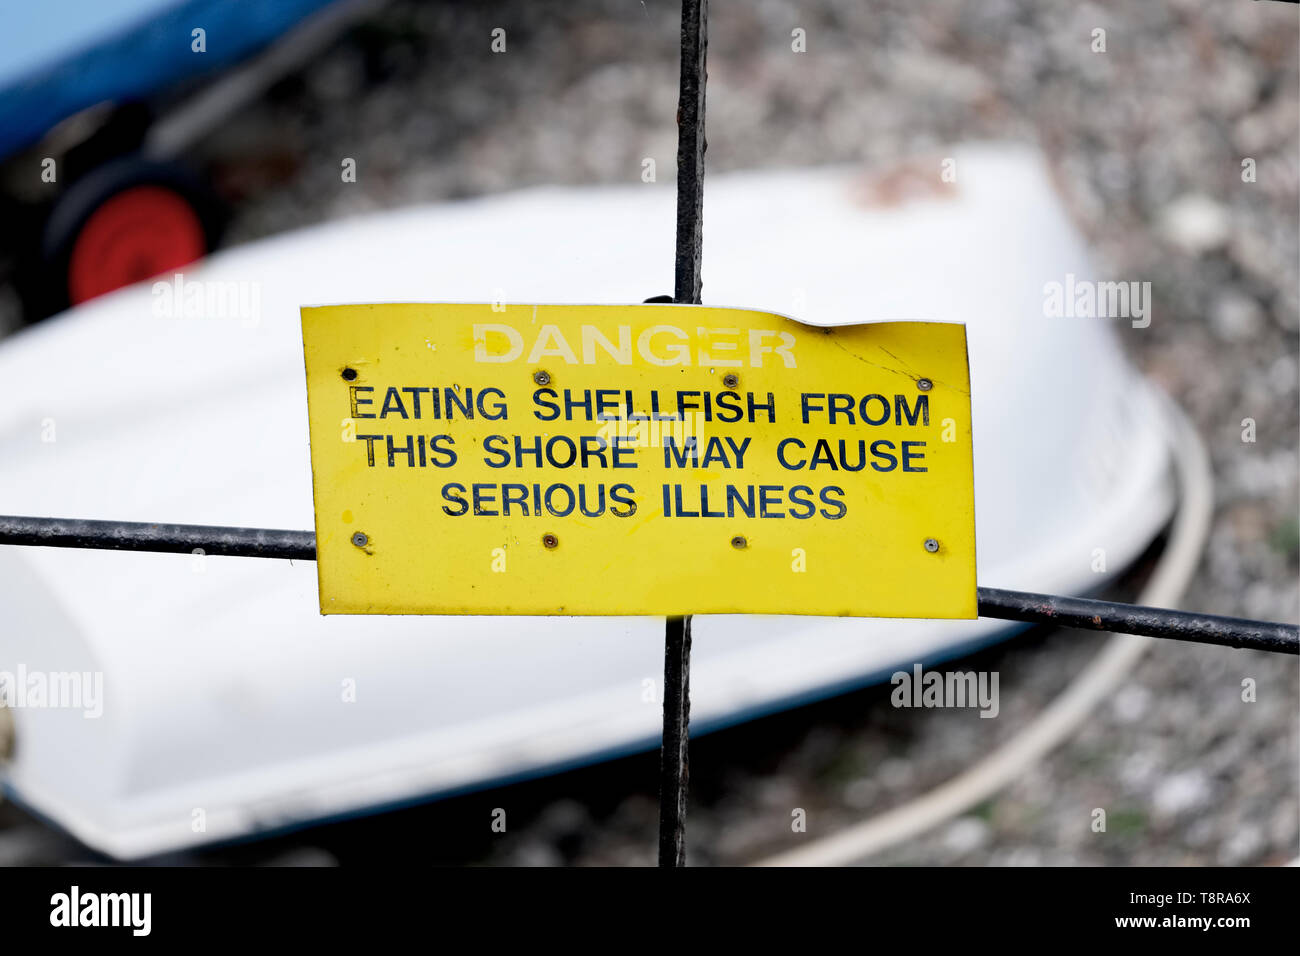 Danger La consommation de mollusques peut provoquer des maladies graves warning sign at beach Banque D'Images